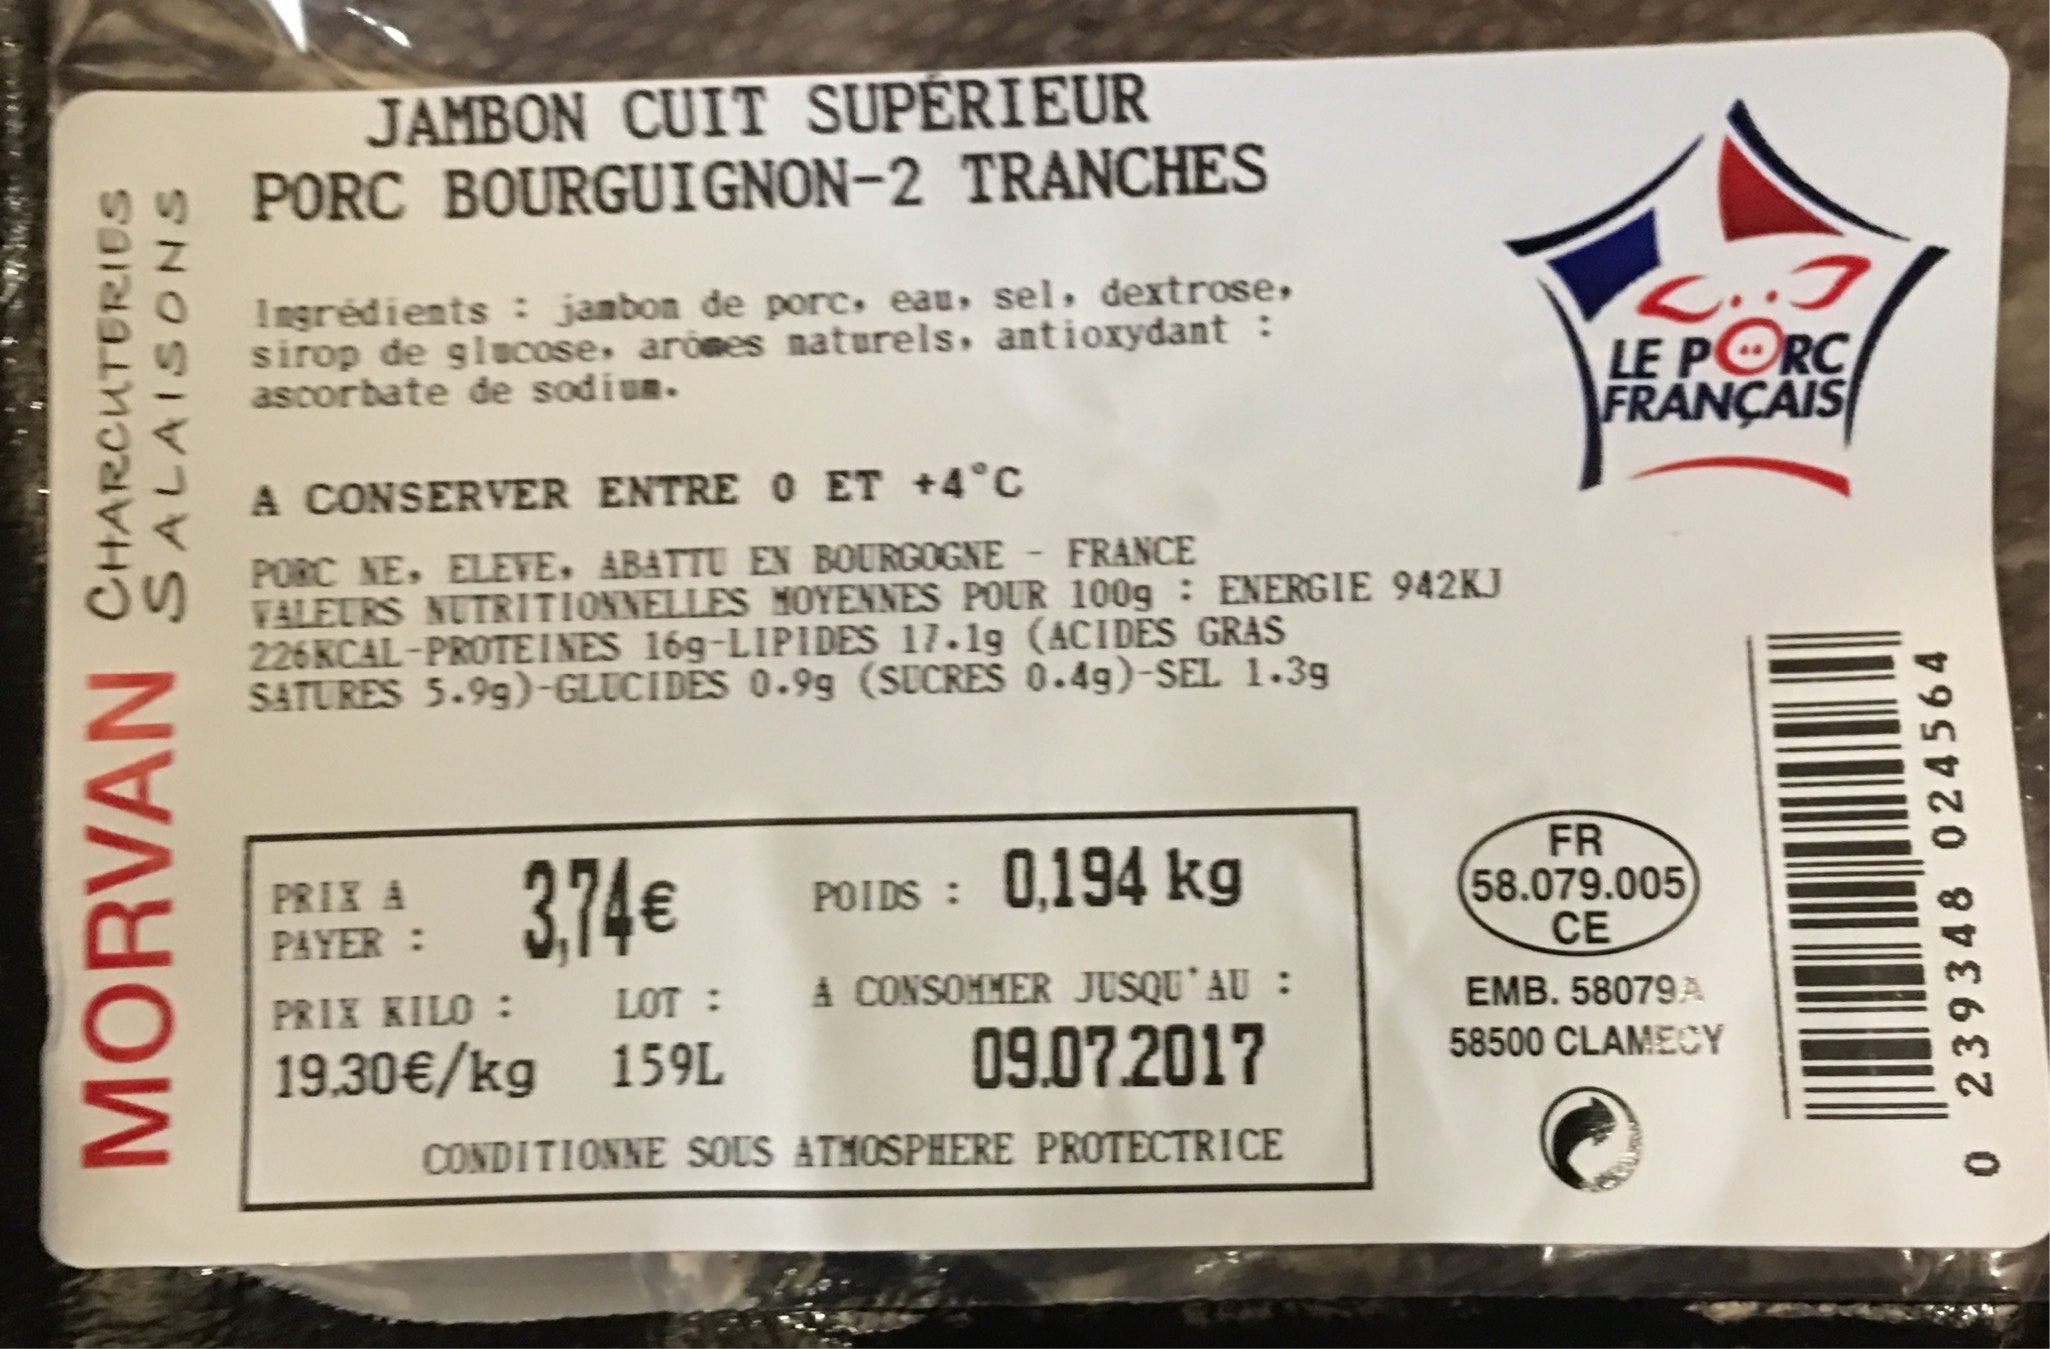 Jambon cuit superieur - Product - fr